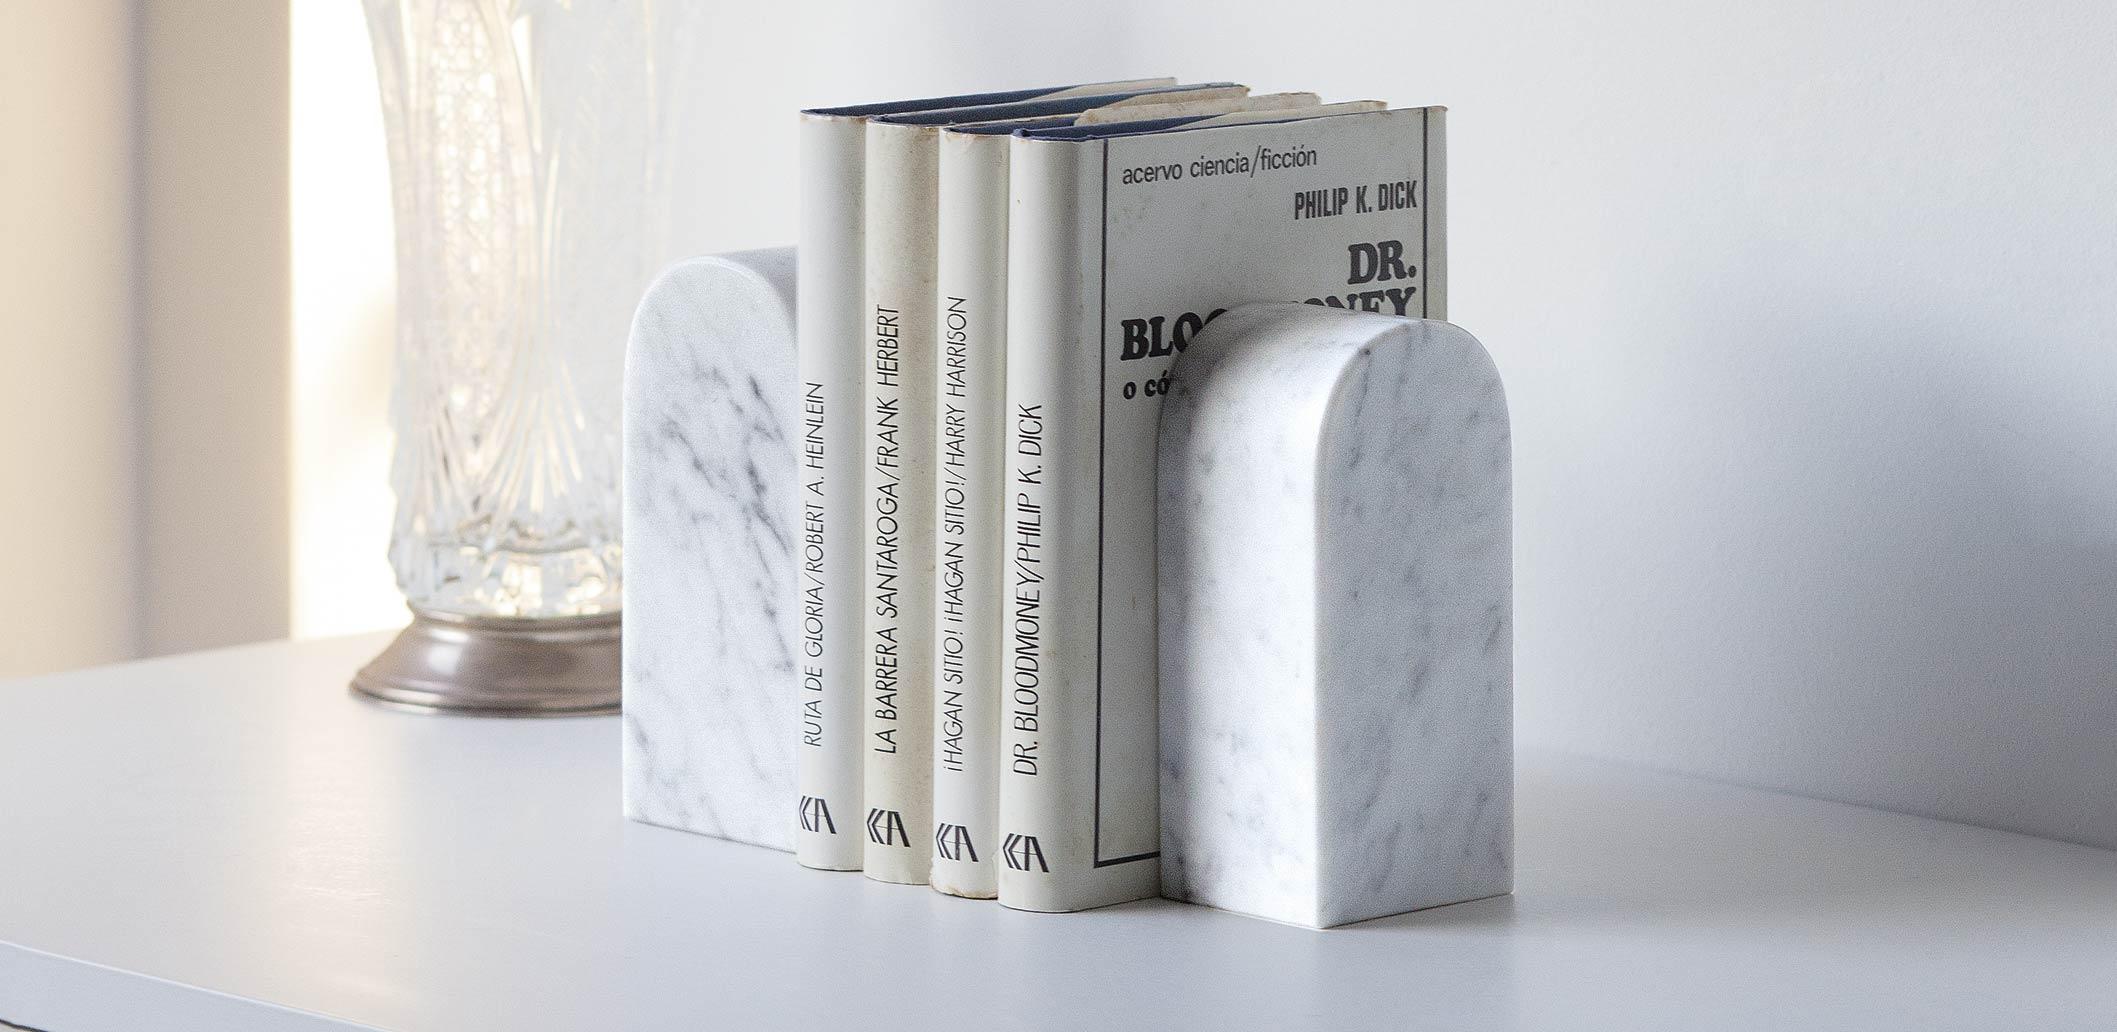 Das marblelous Bücherregal small ist ein minimalistisches Bücherregal aus behandeltem Carrara-Marmor. Das Produkt besteht aus einem massiven prismatischen Marmorblock.